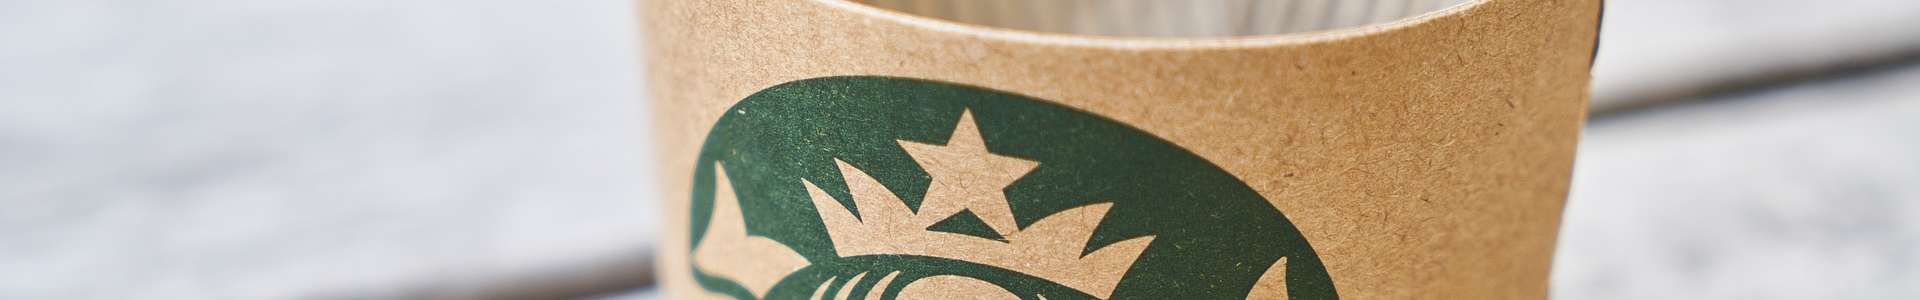 Nestle übernimmt Starbucks-Bereich